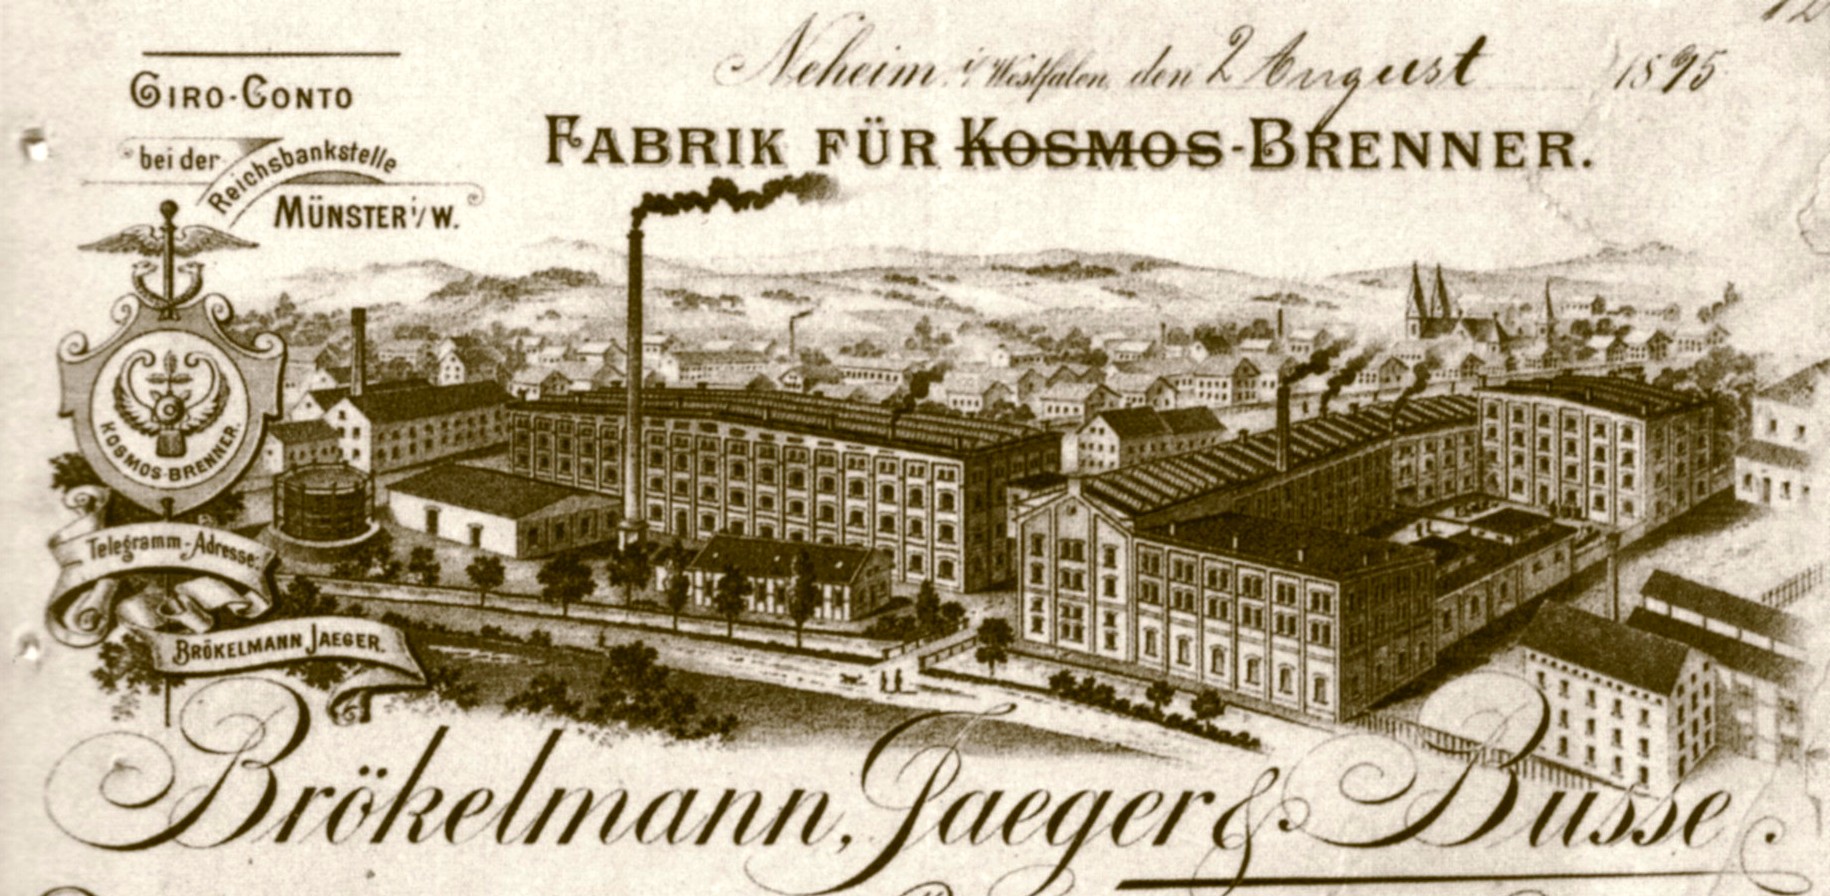 Brökelmann, Jaeger & Busse - Fabrik für Kosmos-Brenner in Neheim